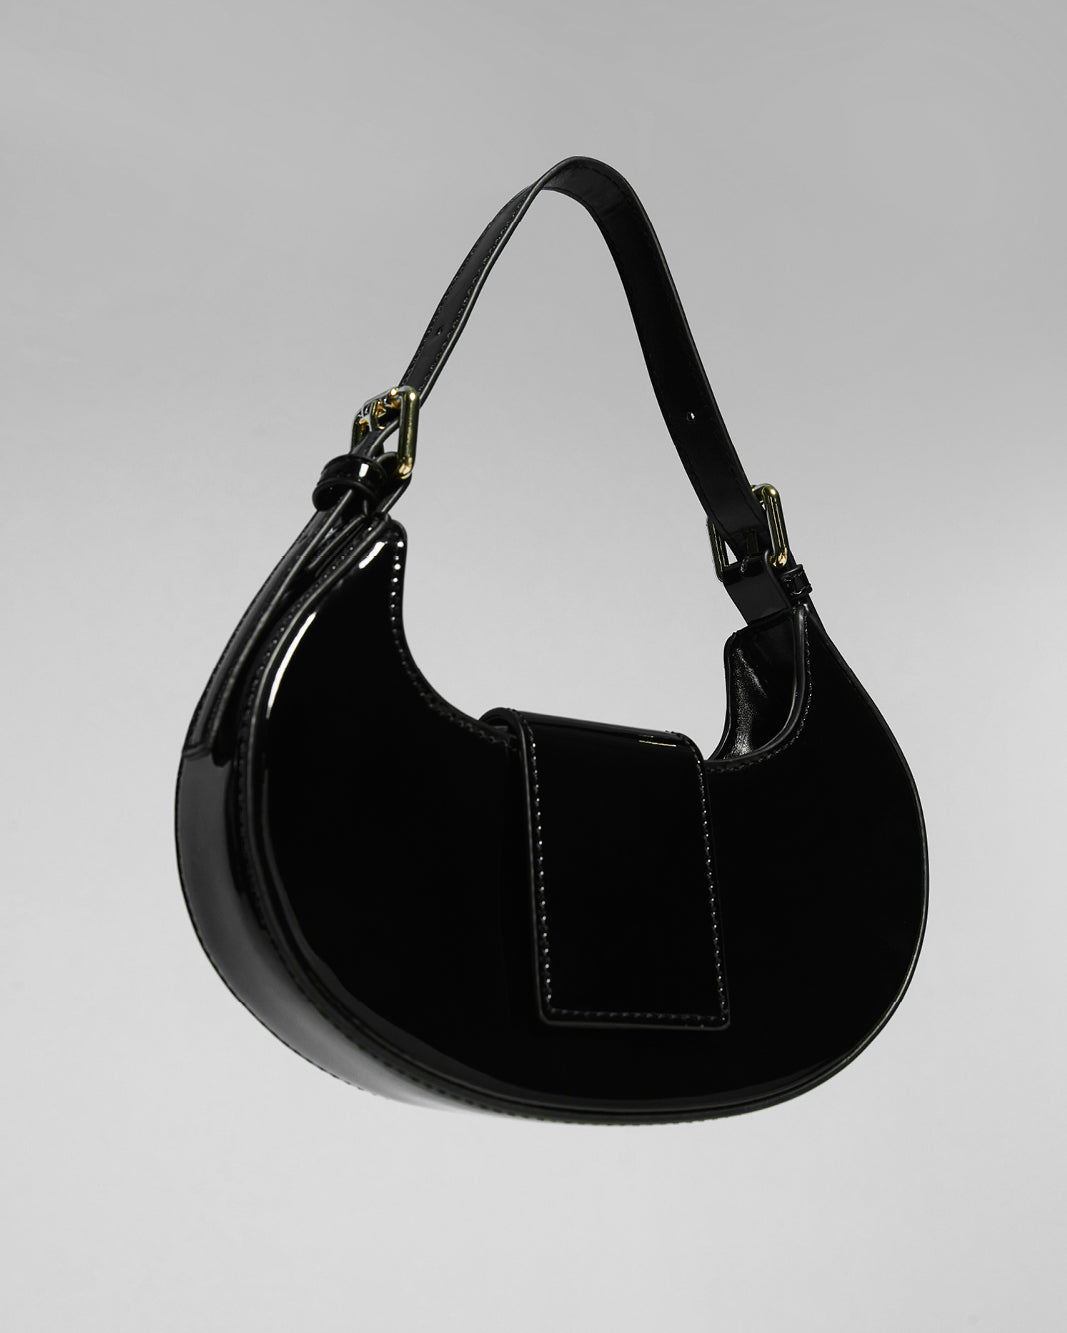 ATTICA CROSS BODY BAG - BLACK PATENT-Handbags-Billini-O/S-Billini